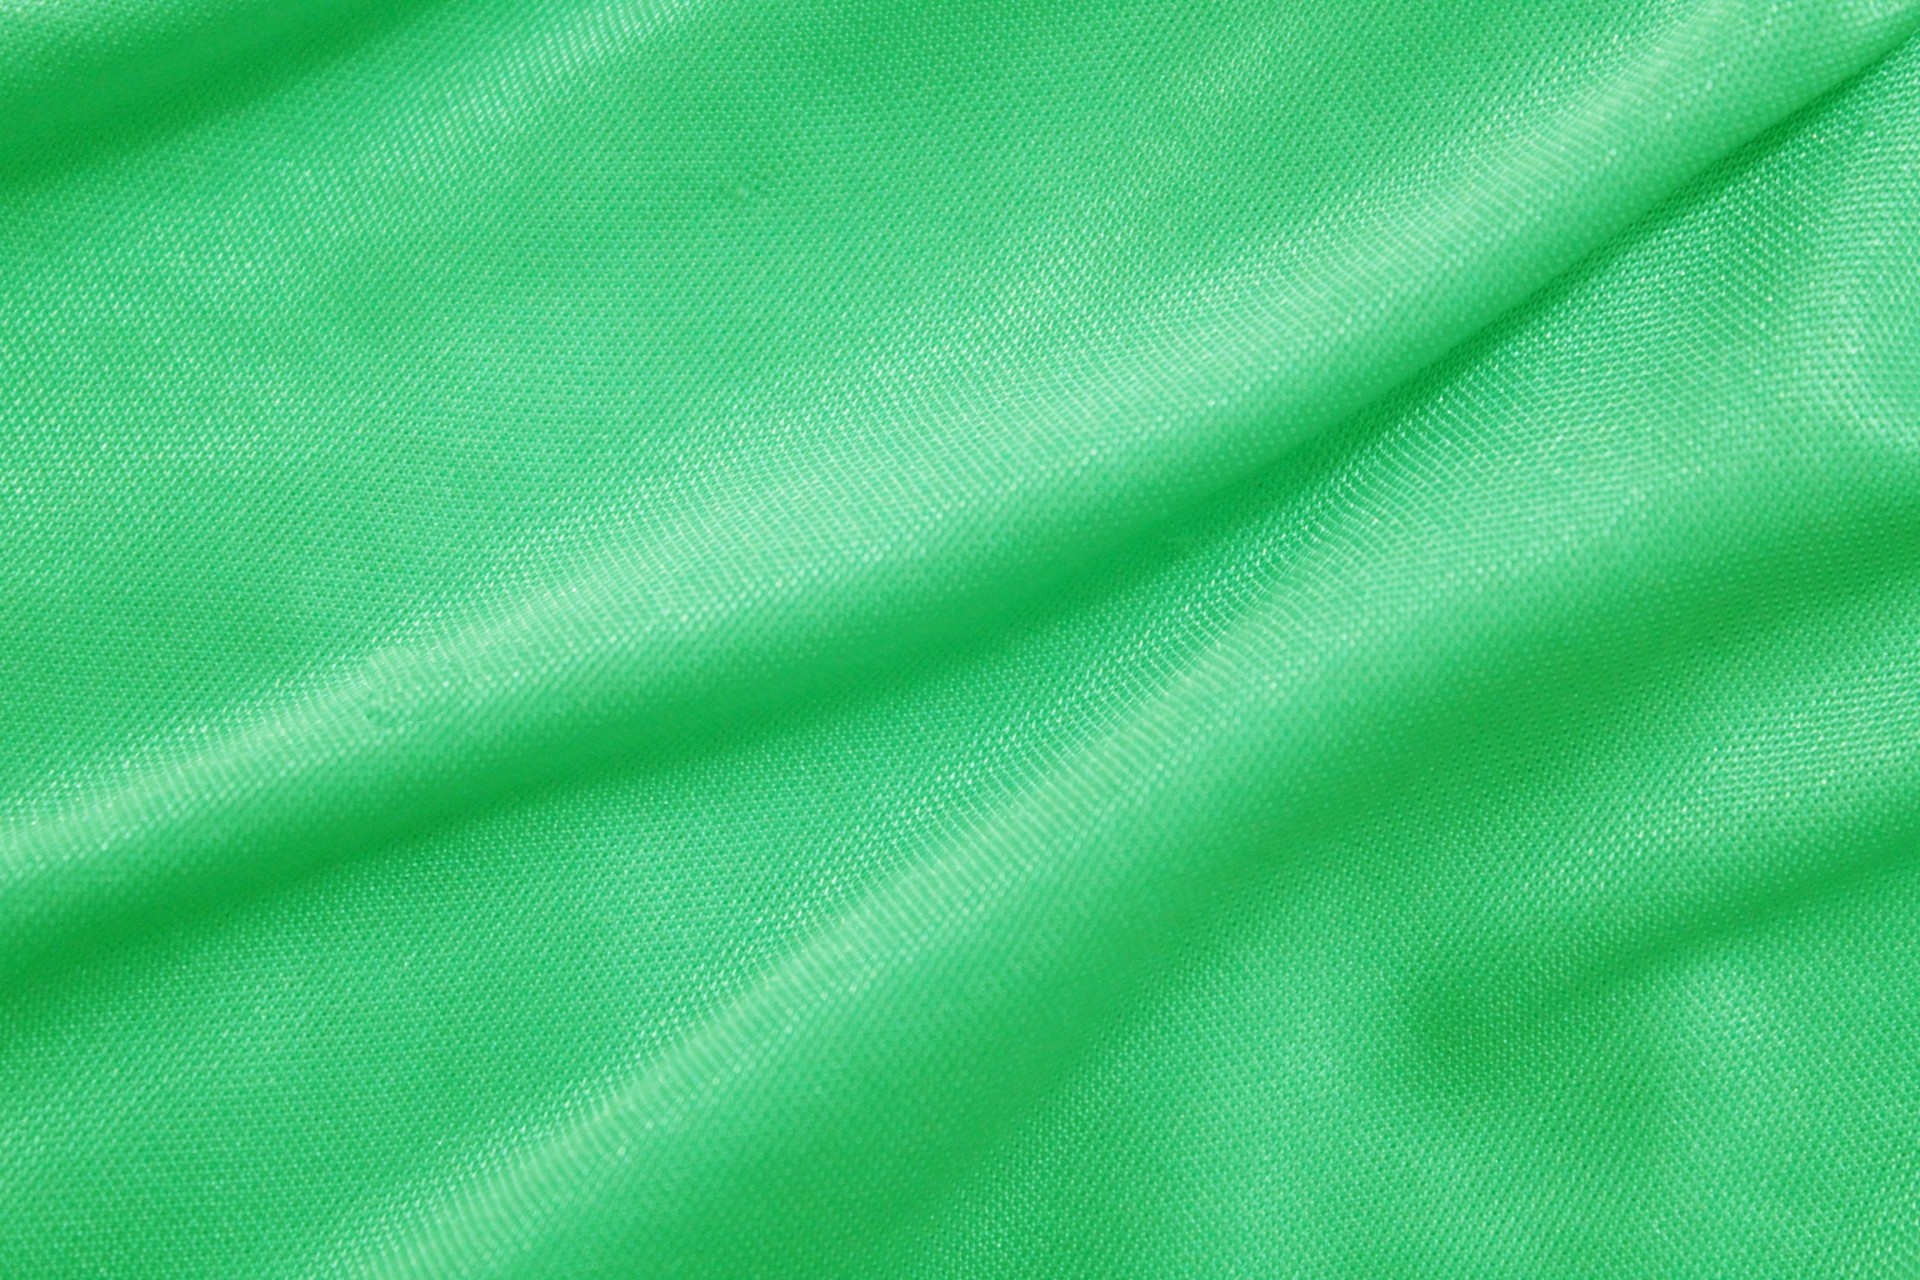 Vải xanh lá cây thanh lịch và sang trọng. Tính năng siêu đa năng của nó cho phép bạn làm bất kỳ sản phẩm may mặc nào, từ áo sơ mi cho đến váy dạ hội.